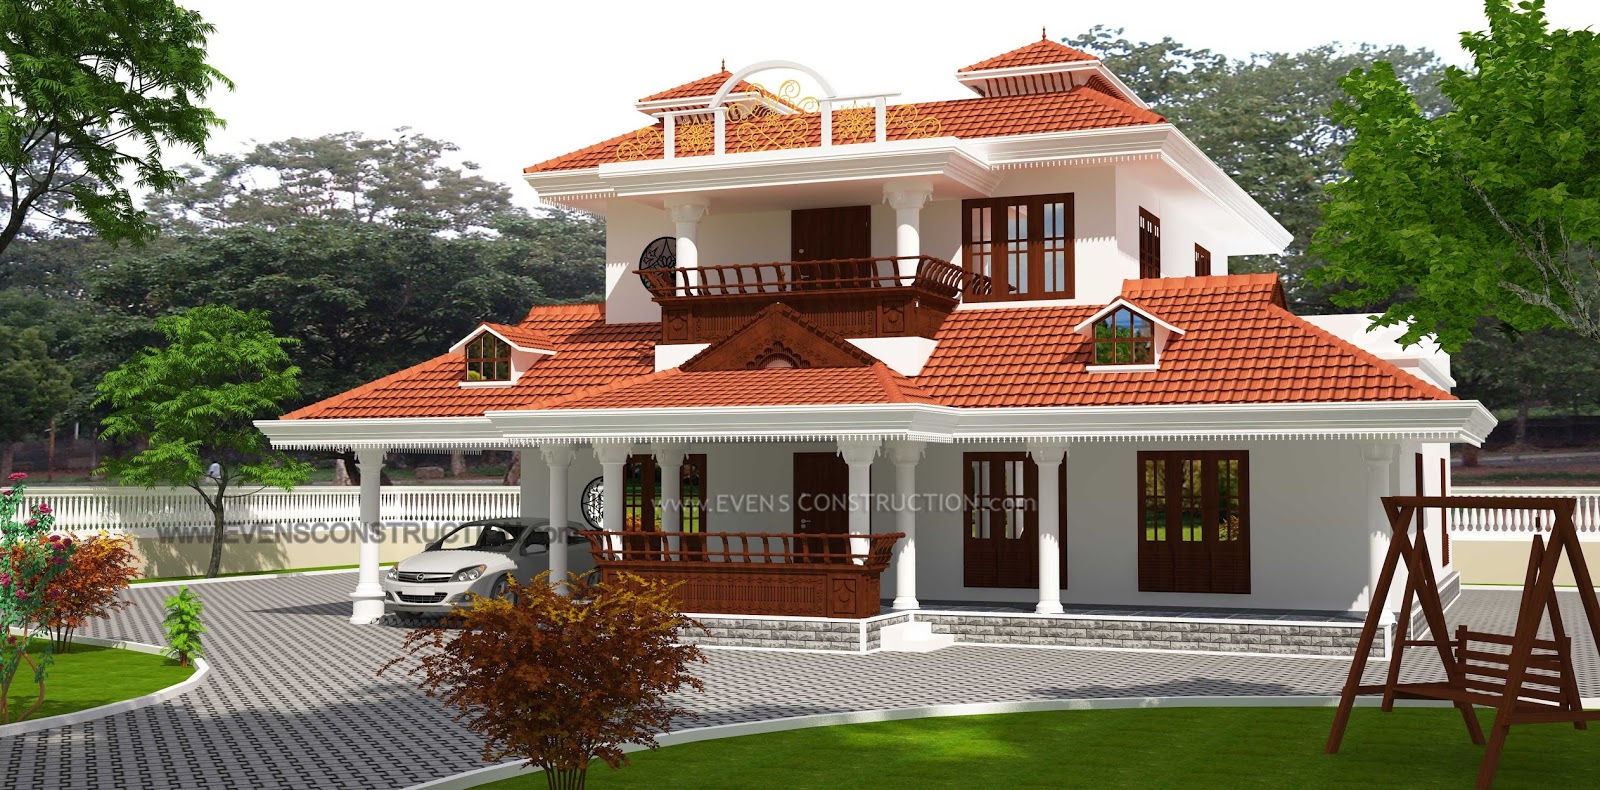 Evens Construction Pvt Ltd: Kerala style 3 bedroom villa